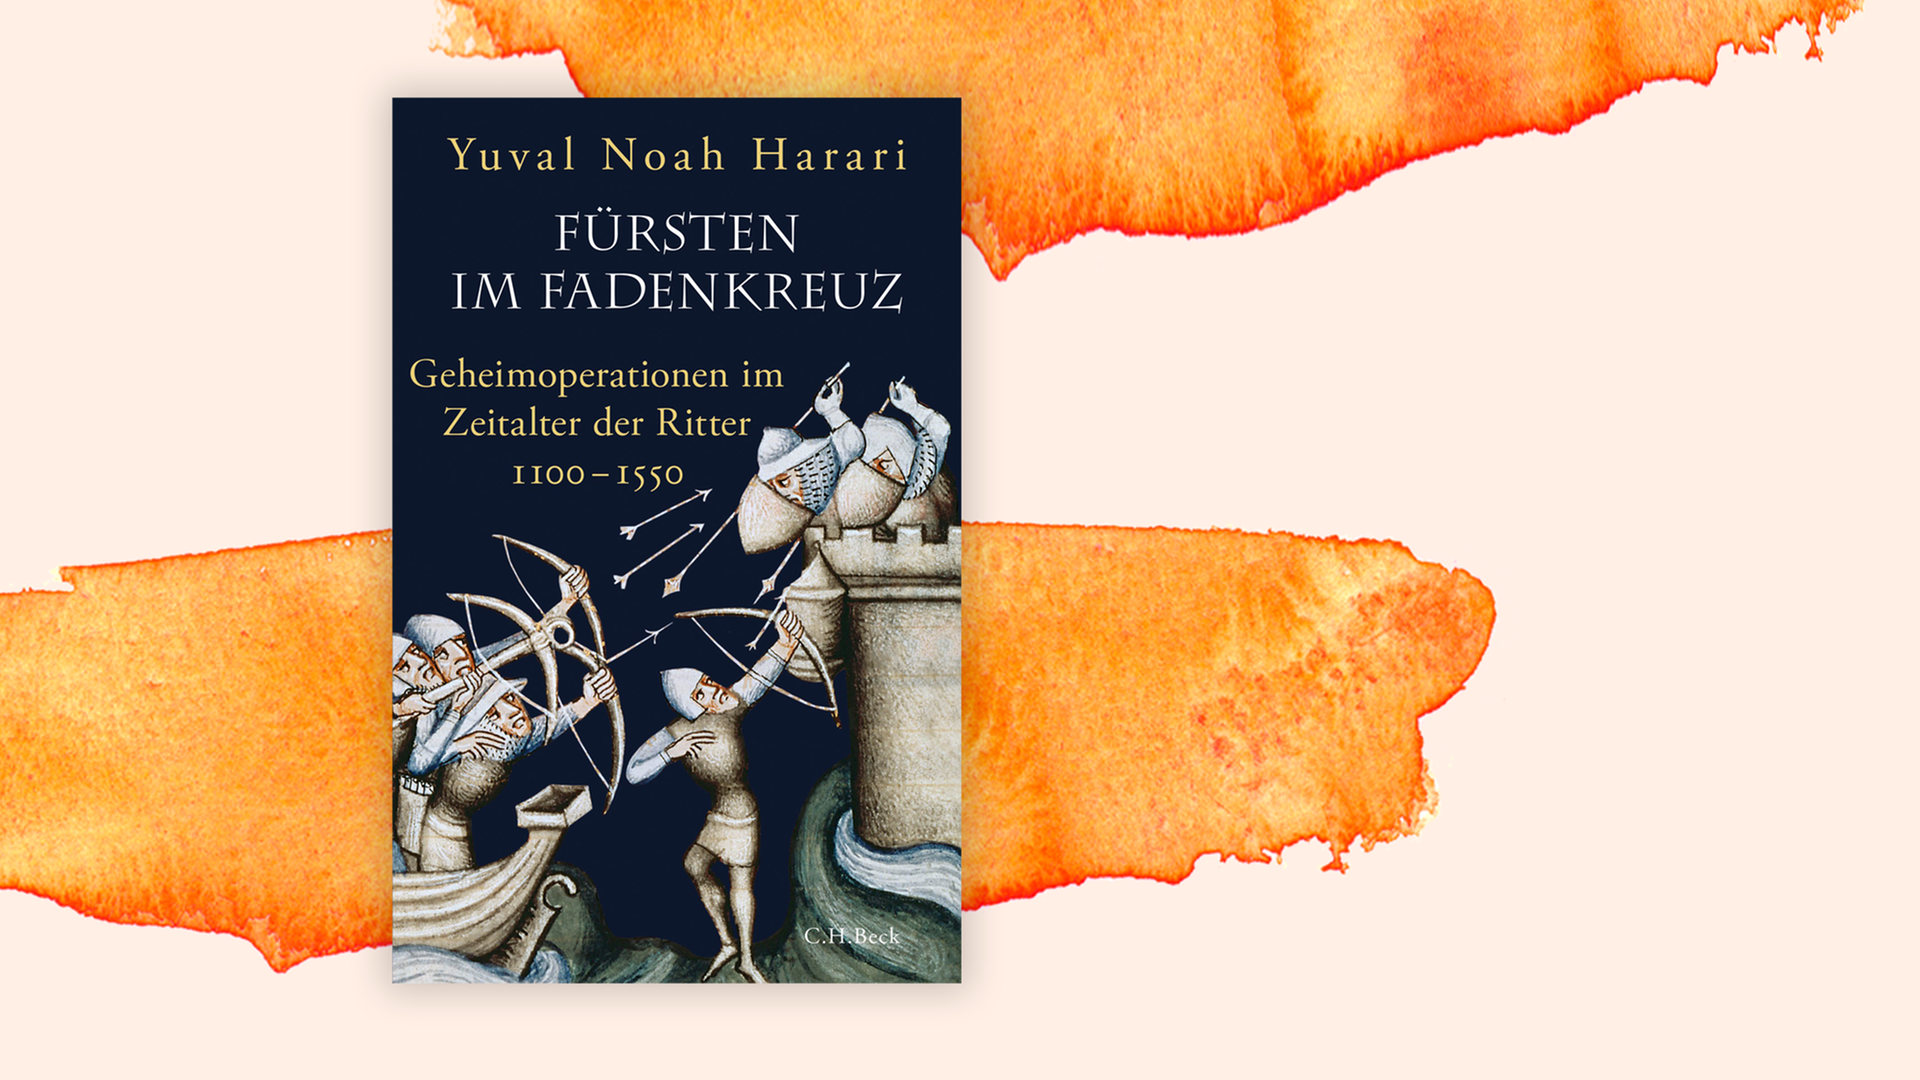 Zu sehen ist das Cover des Buches "Fürsten im Fadenkreuz. Geheimoperationen im Zeitalter der Ritter 1100-1550" des Autors Yuval Noah Harari.